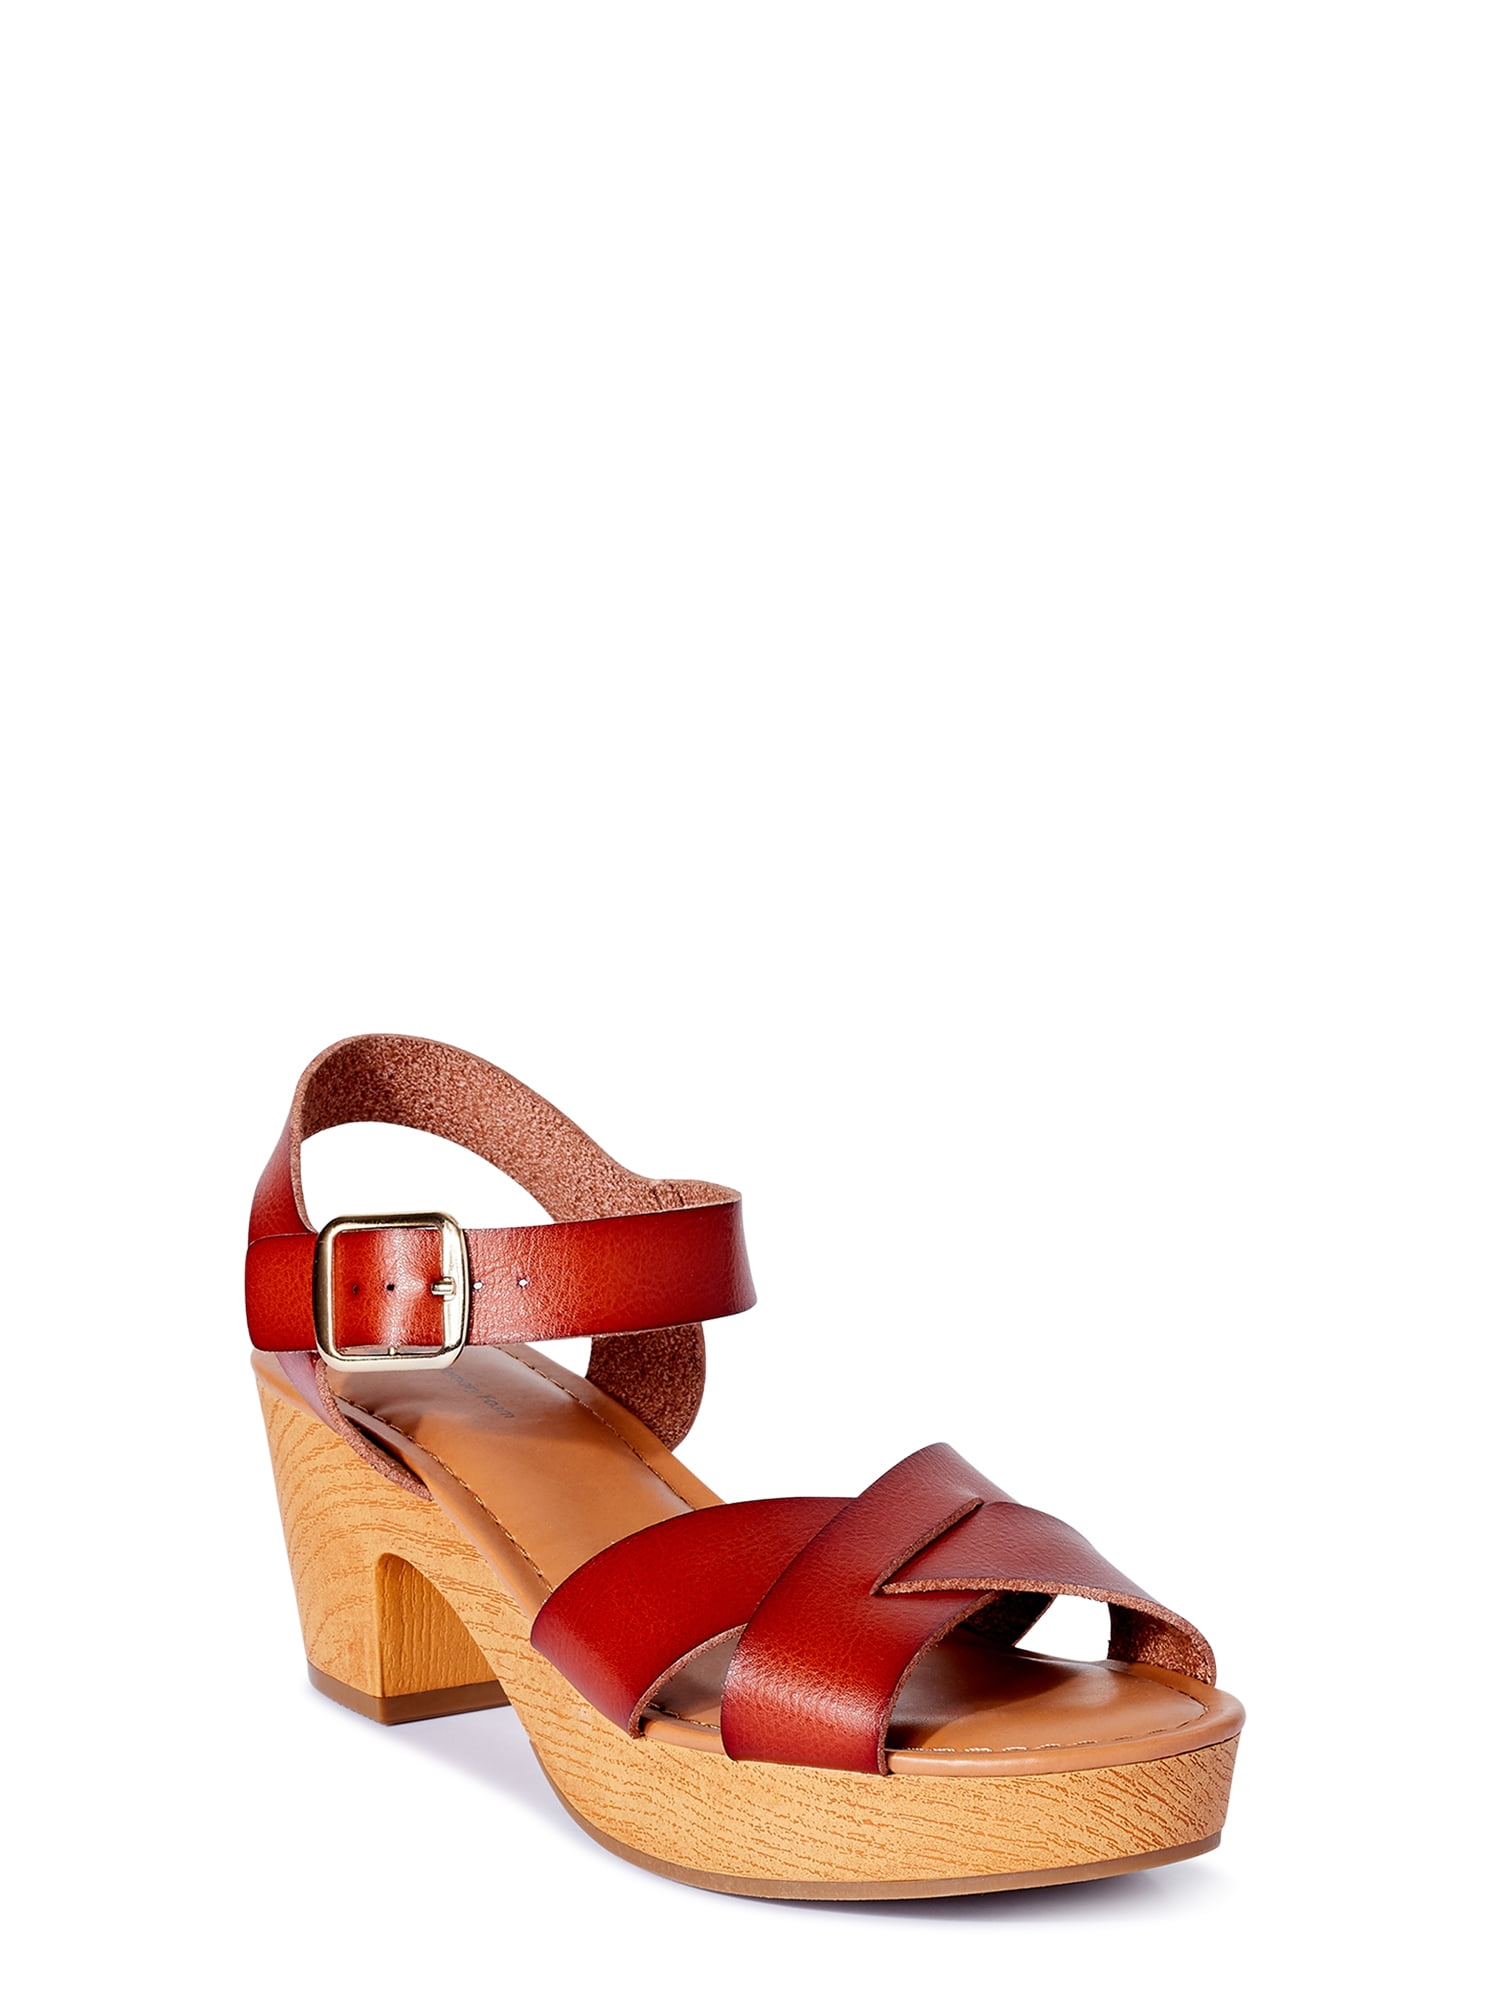 Buy > wooden heeled sandals > in stock